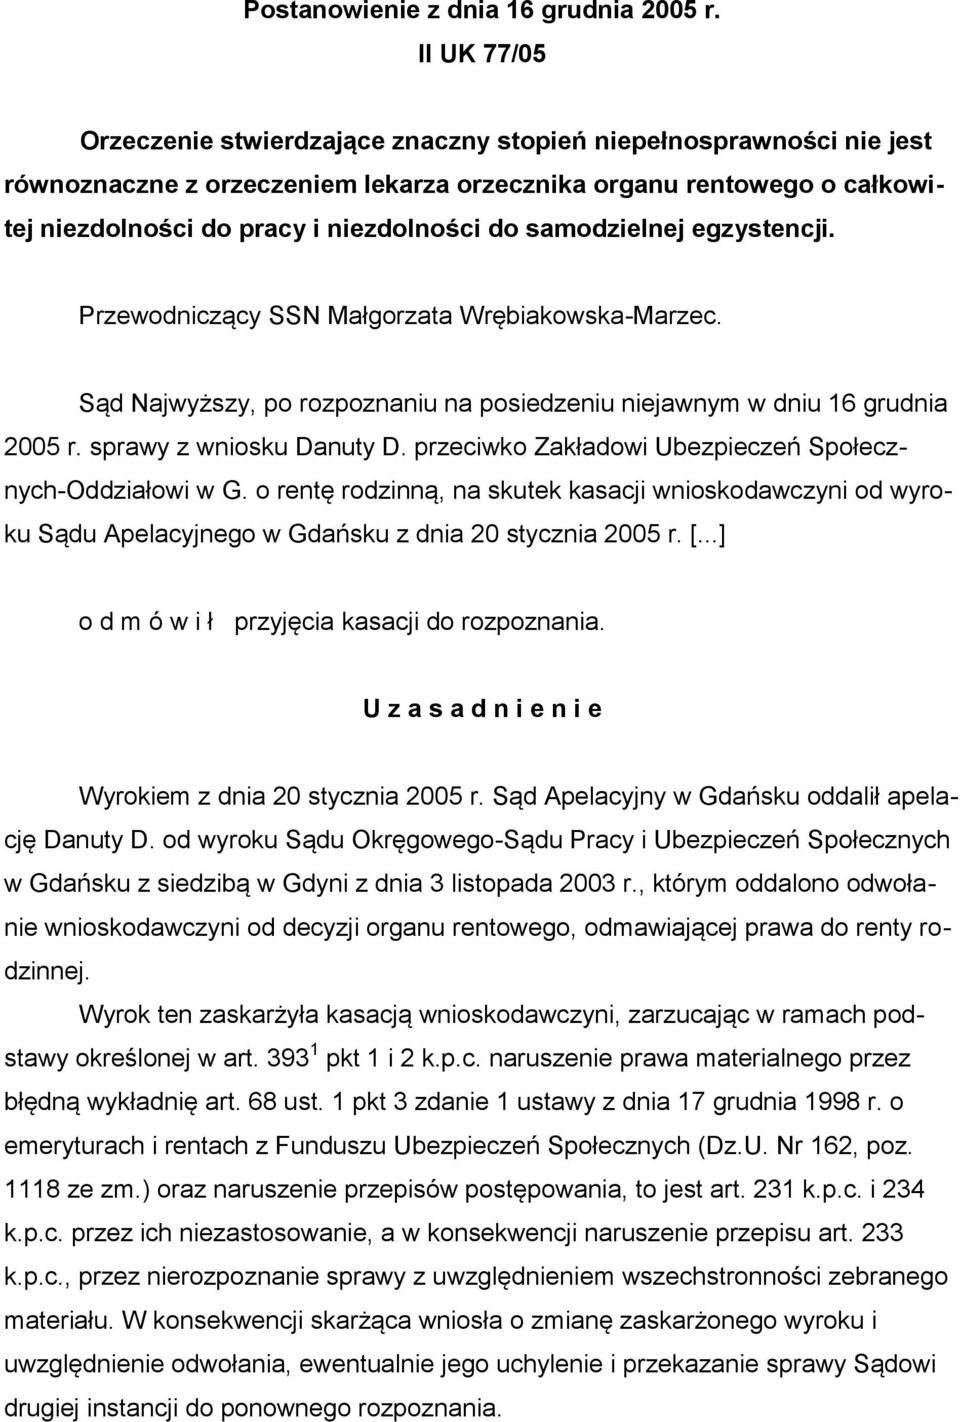 samodzielnej egzystencji. Przewodniczący SSN Małgorzata Wrębiakowska-Marzec. Sąd Najwyższy, po rozpoznaniu na posiedzeniu niejawnym w dniu 16 grudnia 2005 r. sprawy z wniosku Danuty D.